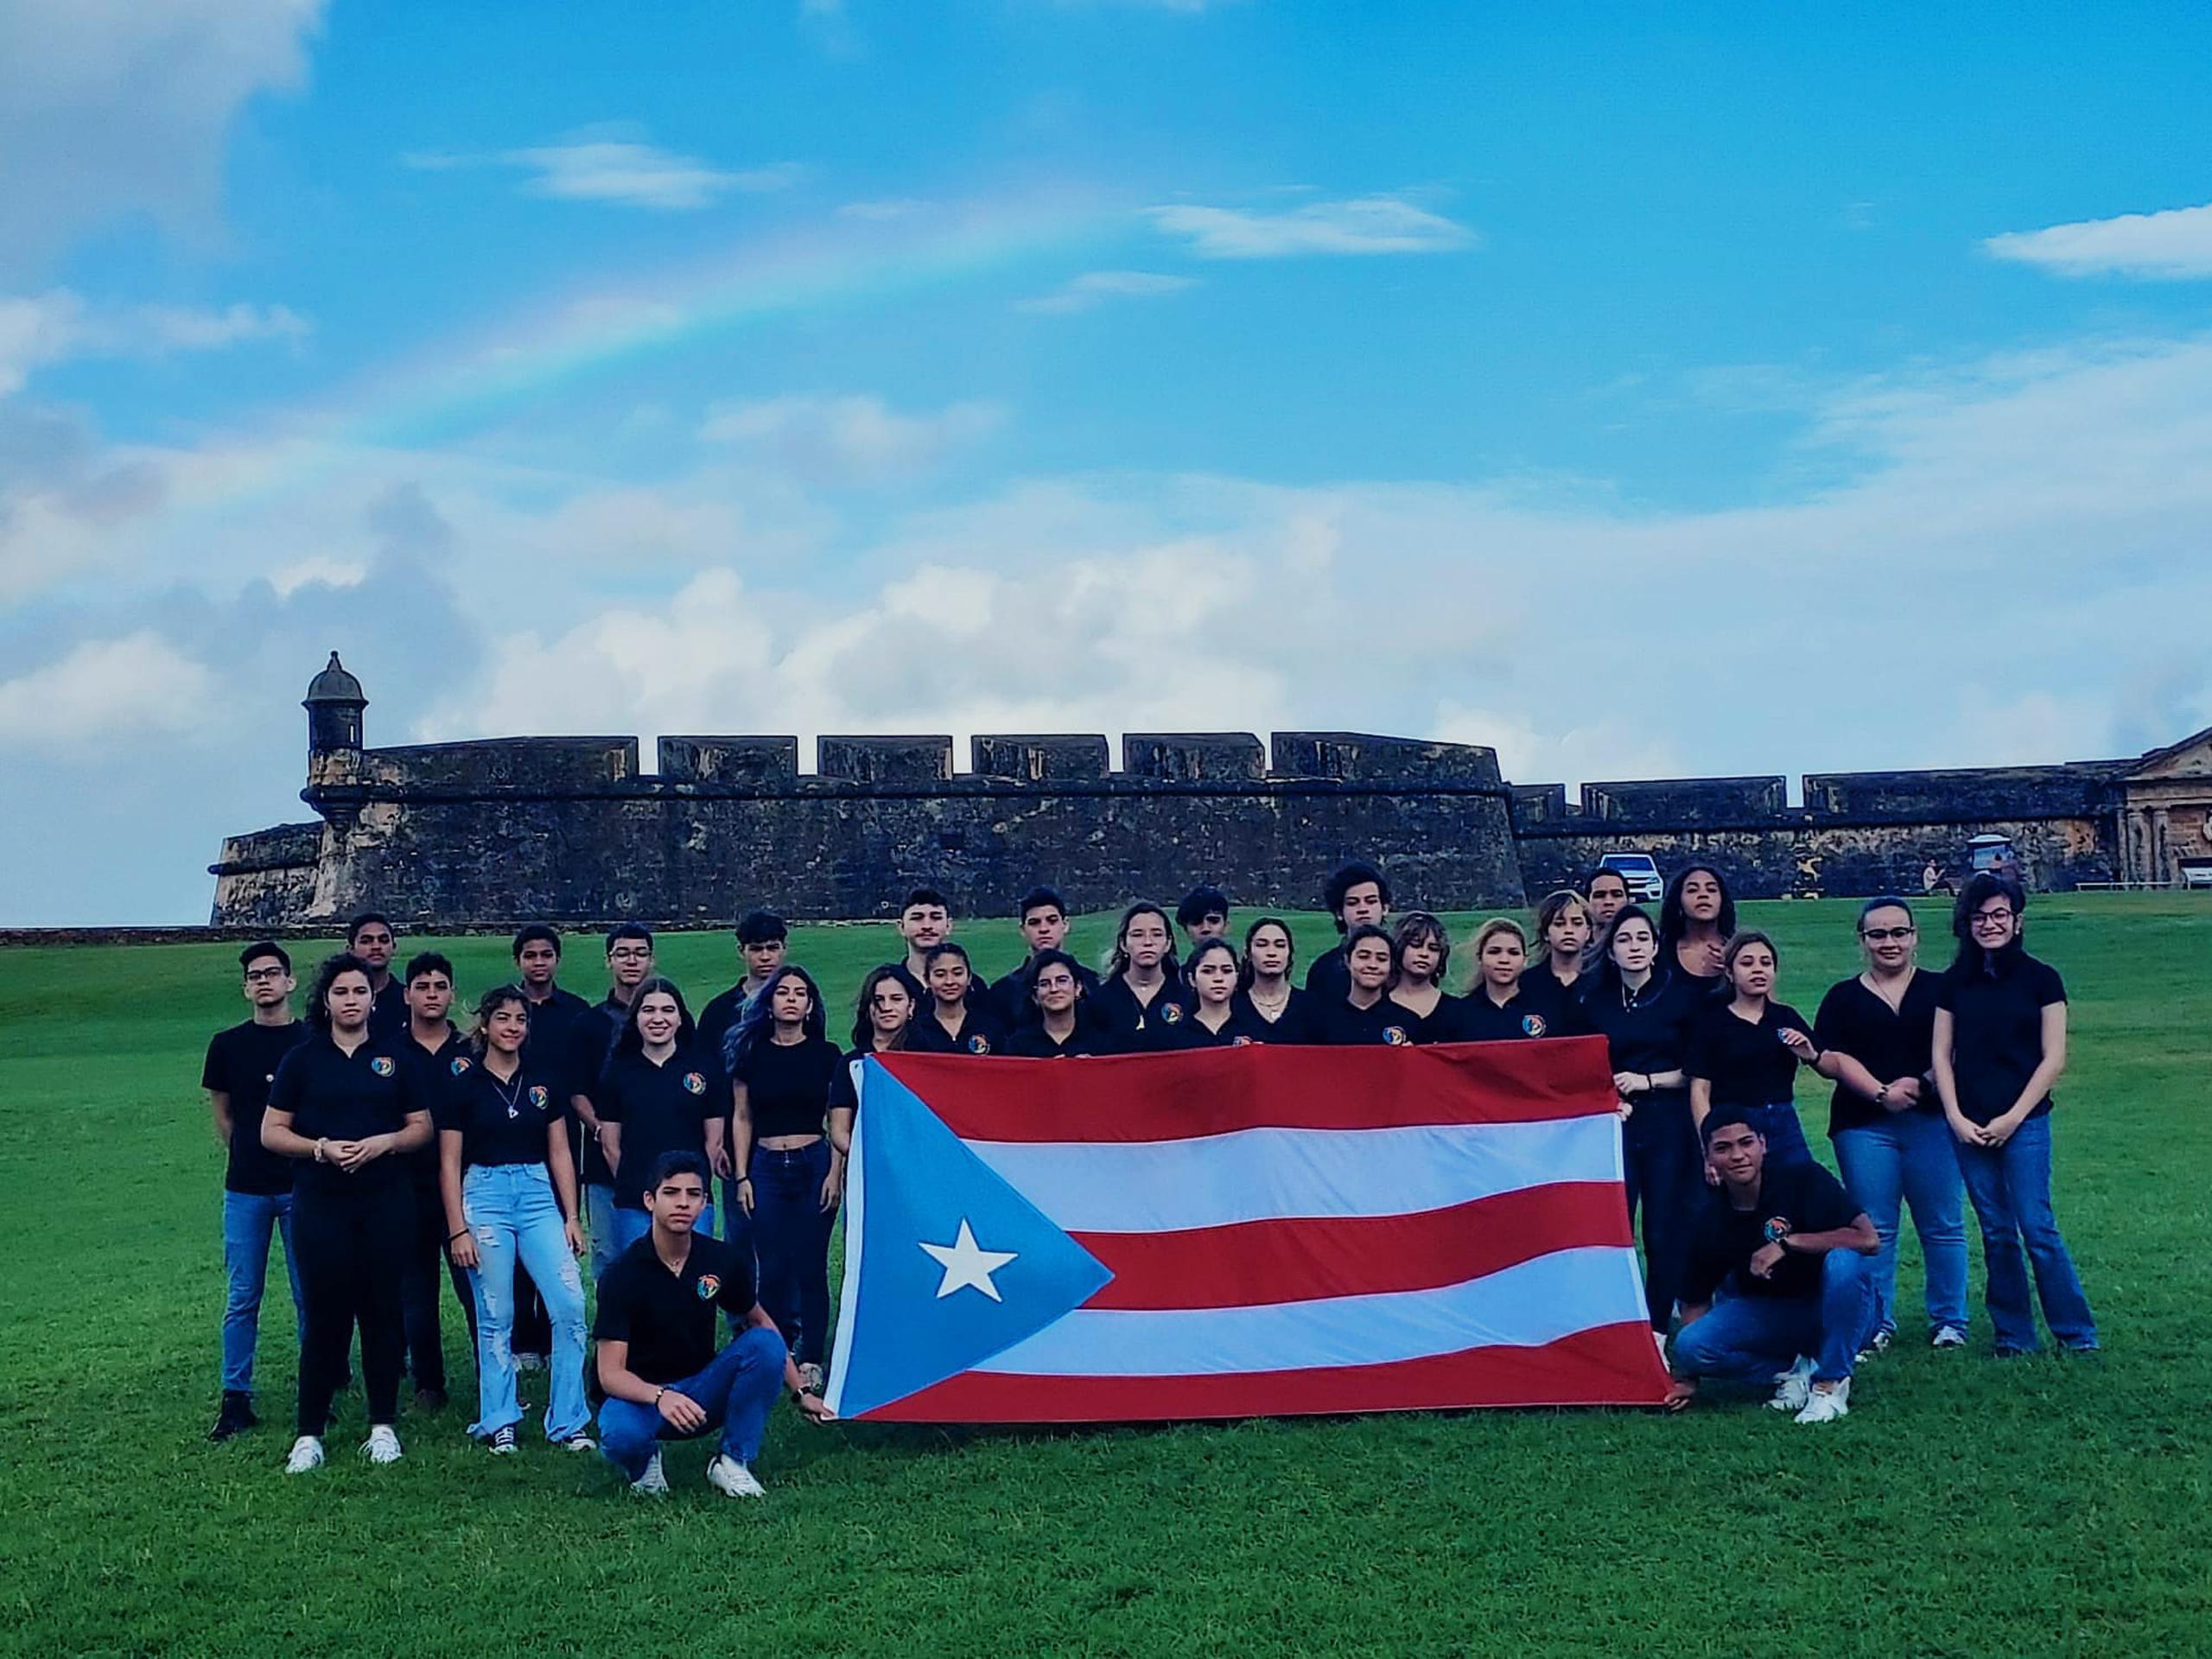 La Orquesta Sinfónica Antonio Paoli de Caguas tendrán la oportunidad de representar a Puerto Rico y América Latina en uno de los festivales musicales más importante de Europa.